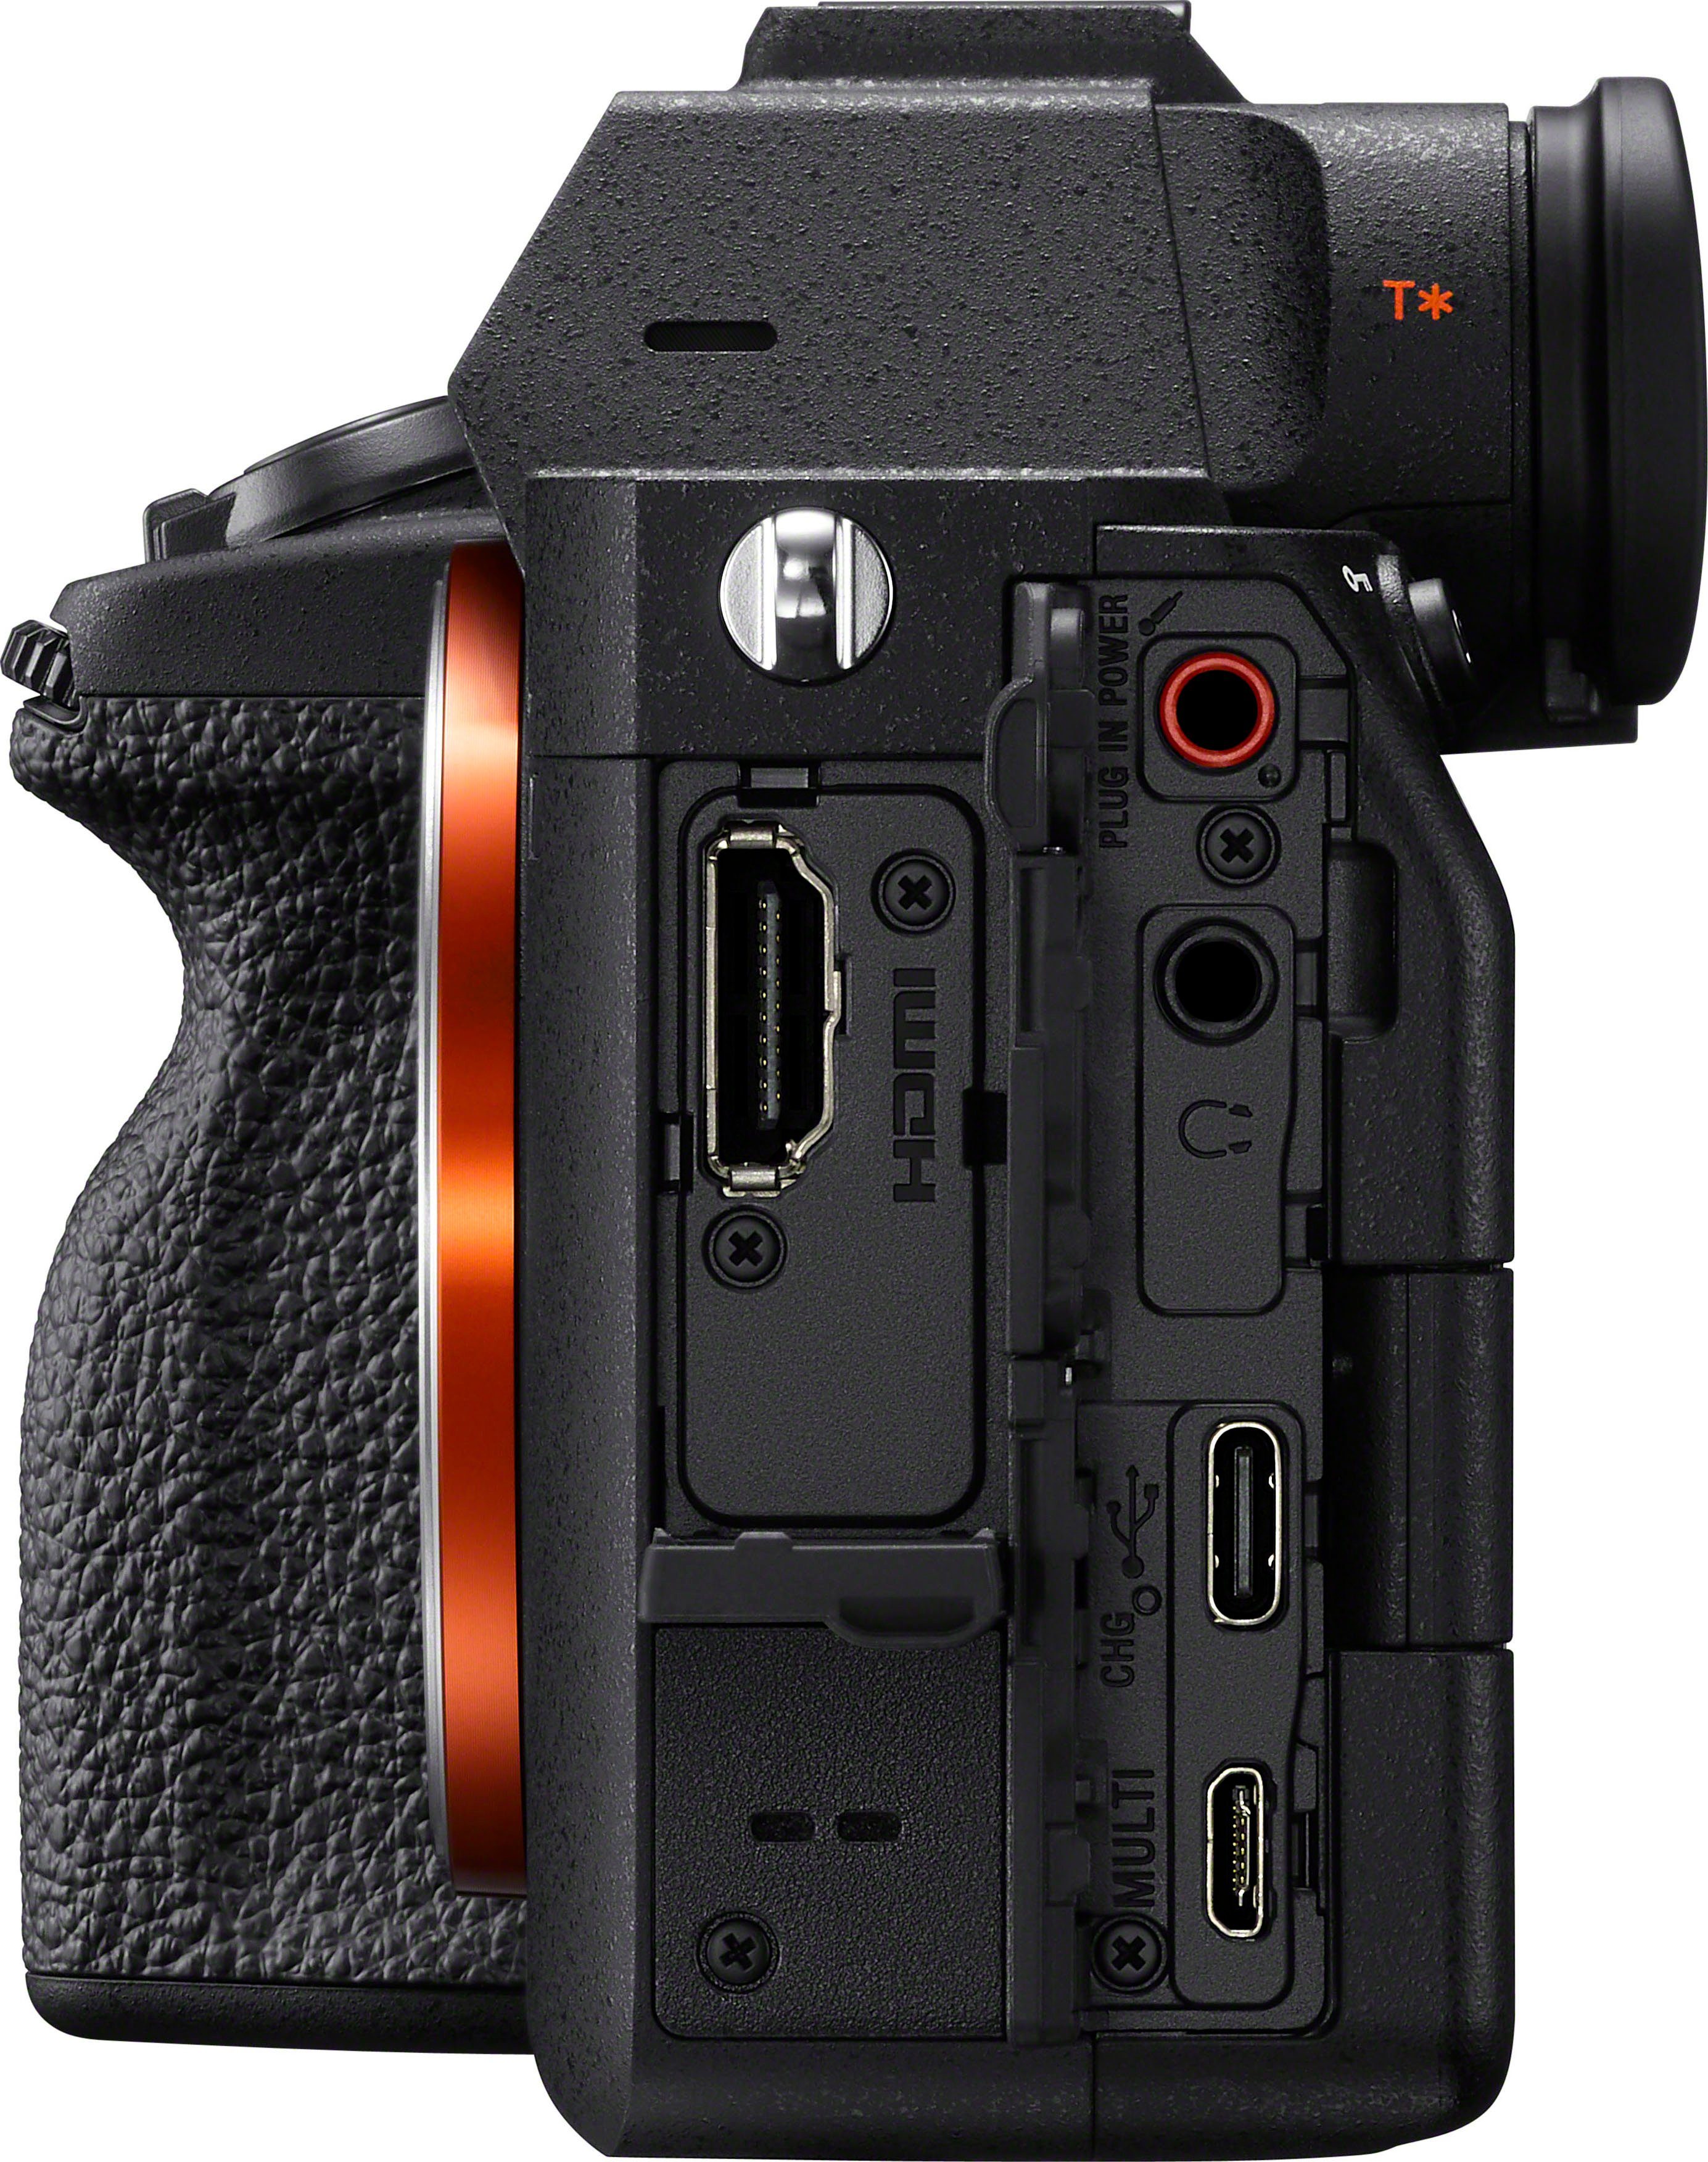 WLAN) Systemkamera (33 IV Sony MP, Bluetooth, A7